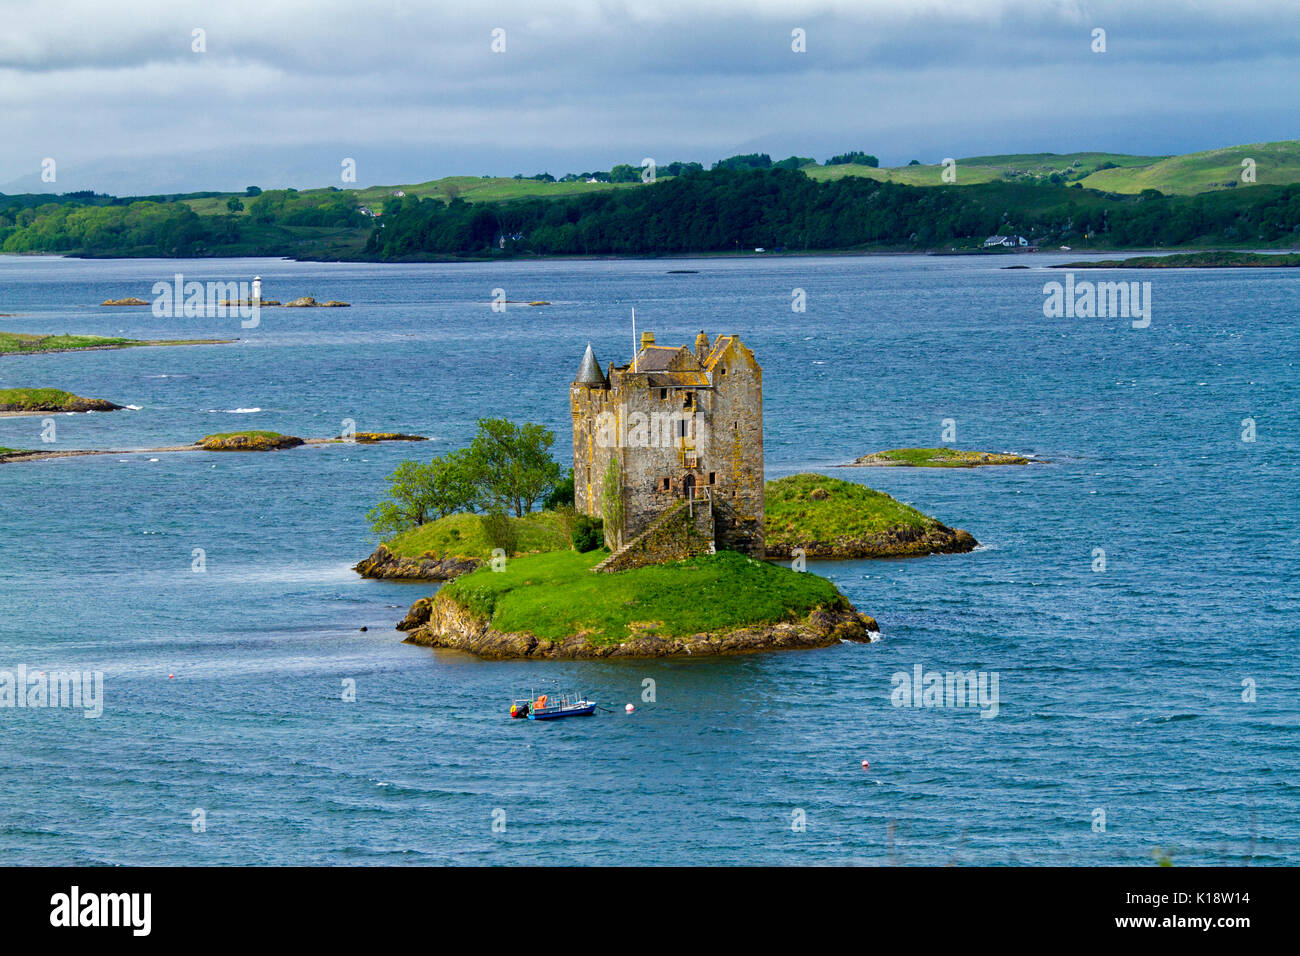 Castle Stalker, das Tower House/auf der winzigen Insel im Loch Laich, in der Nähe von Port Appin, Argyll, Schottland, mit einem kleinen Boot und einem kleinen Leuchtturm in der Nähe Stockfoto